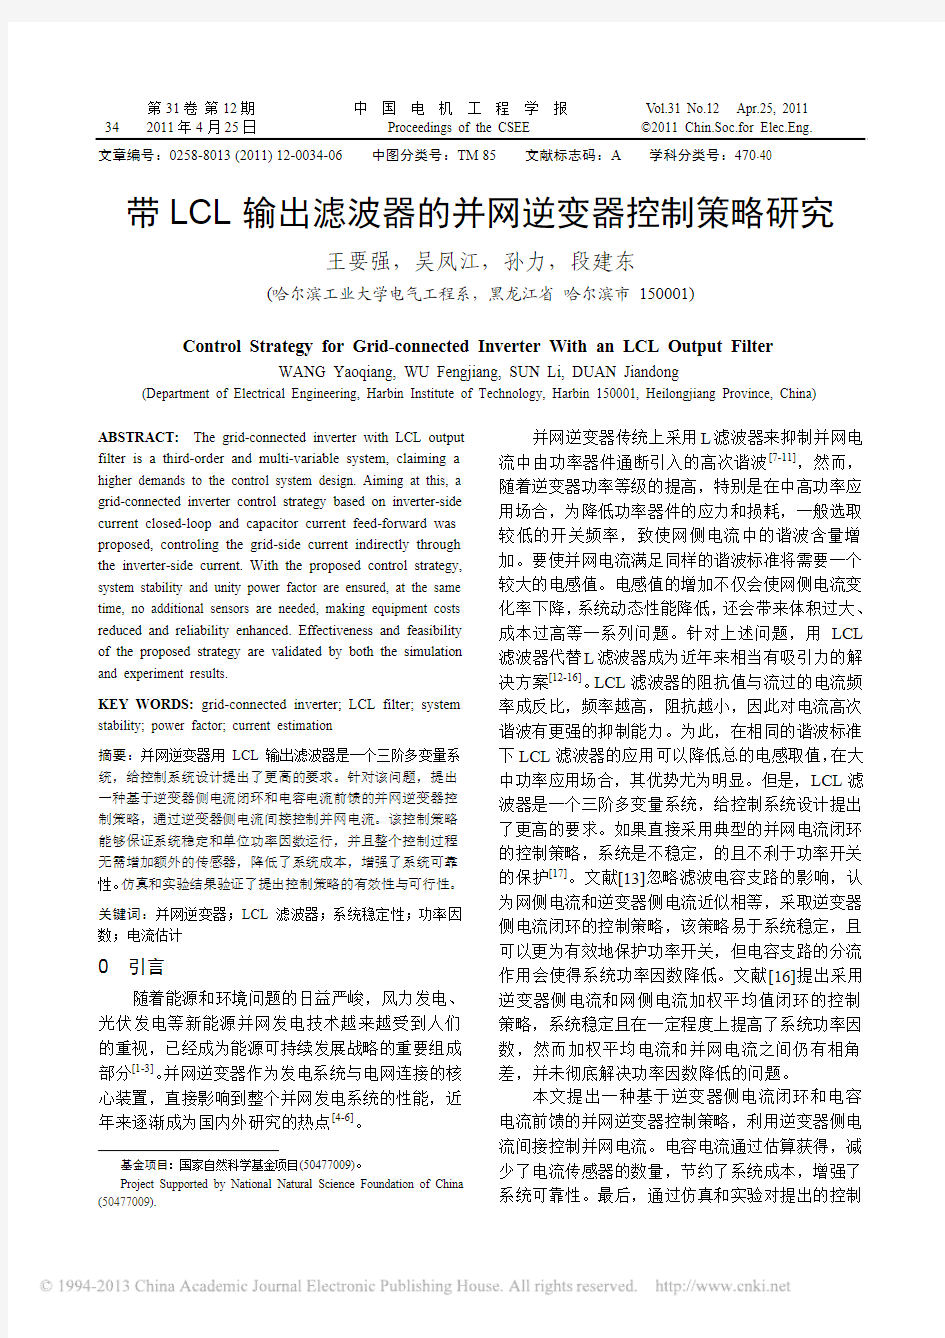 带LCL输出滤波器的并网逆变器控制策略研究